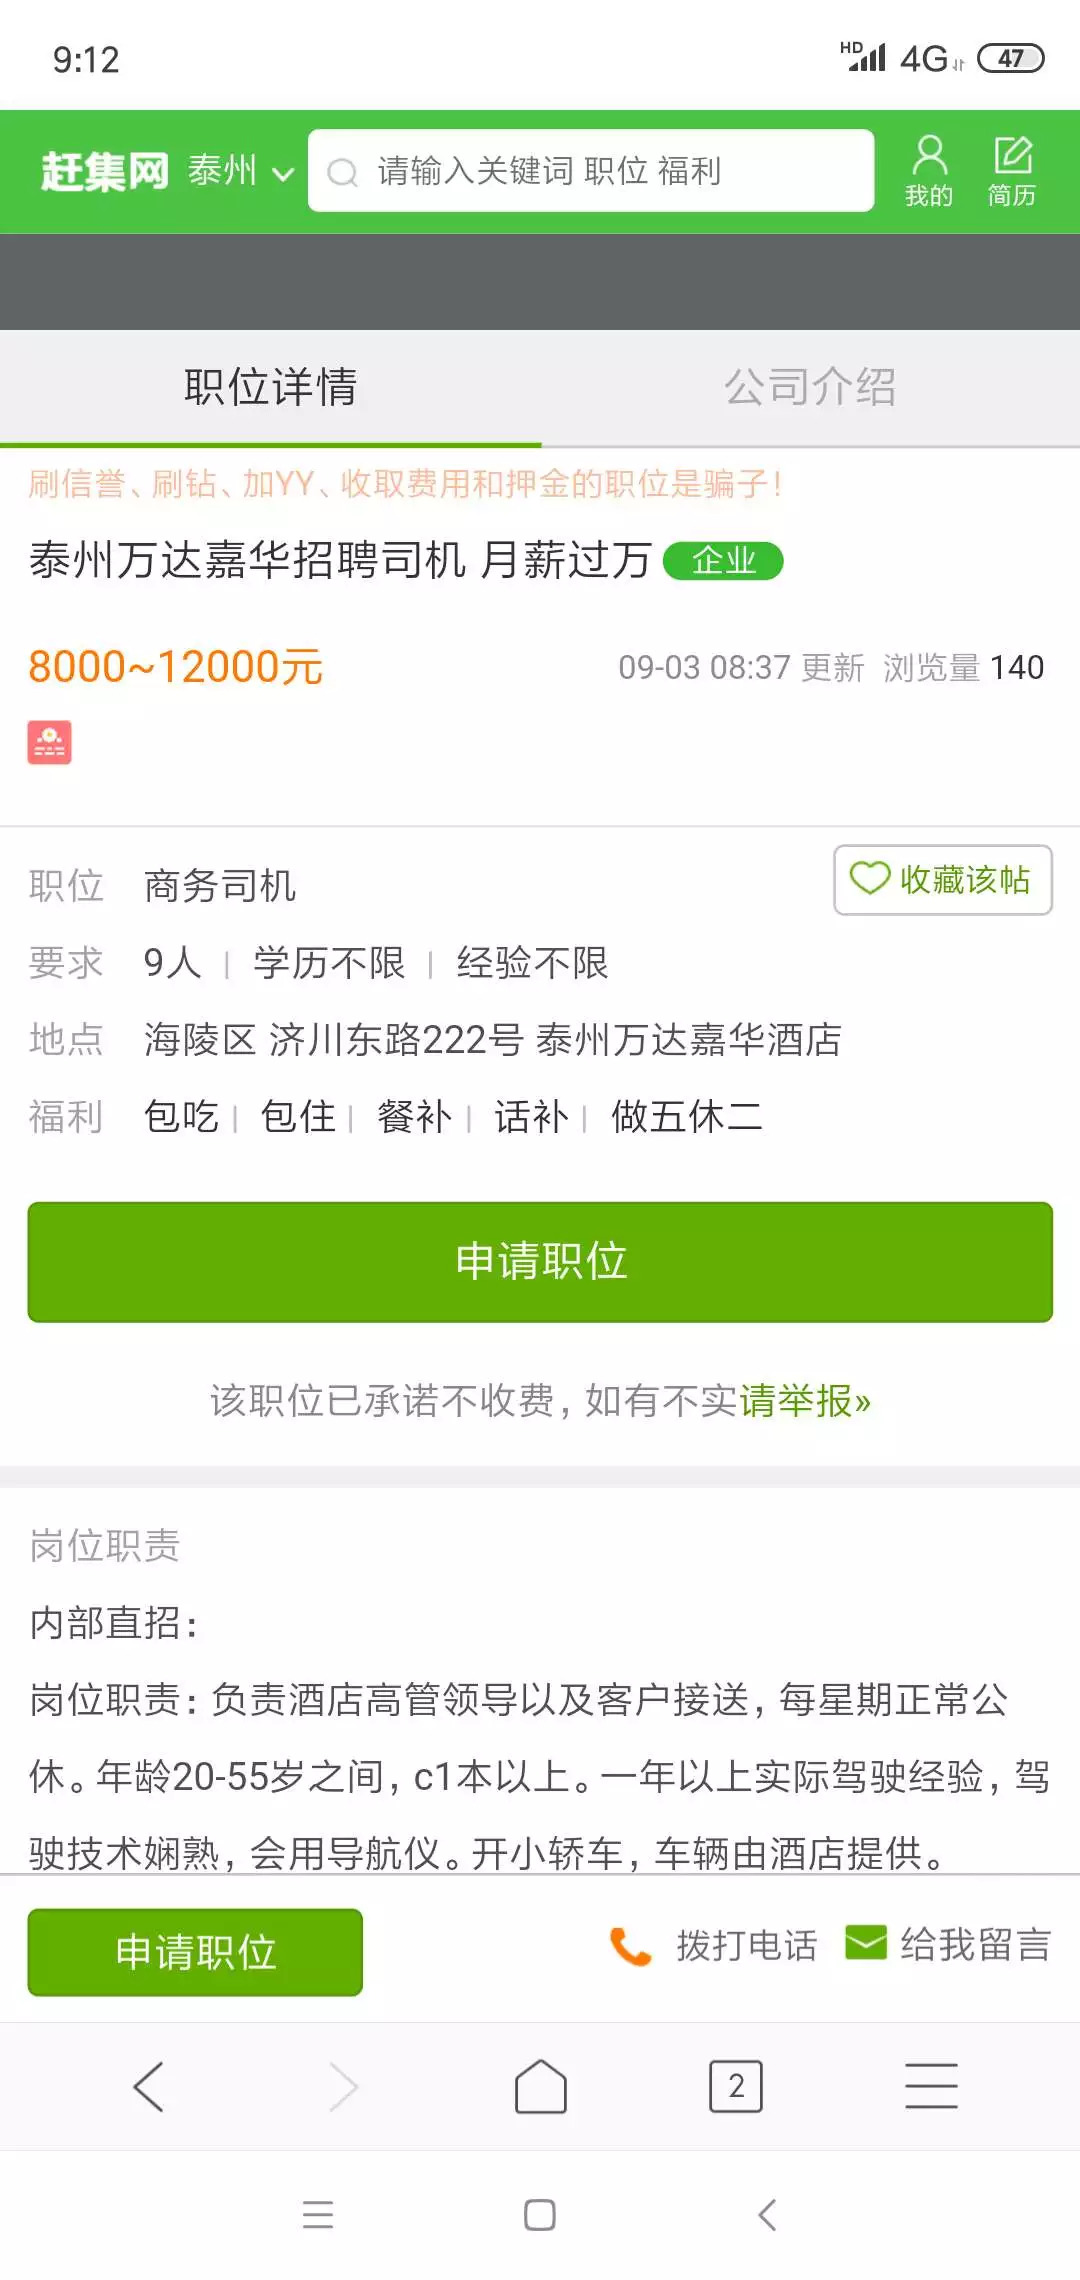 c1招聘信息_10000元 汇阳房产找售楼经纪人和房产过户专员(2)